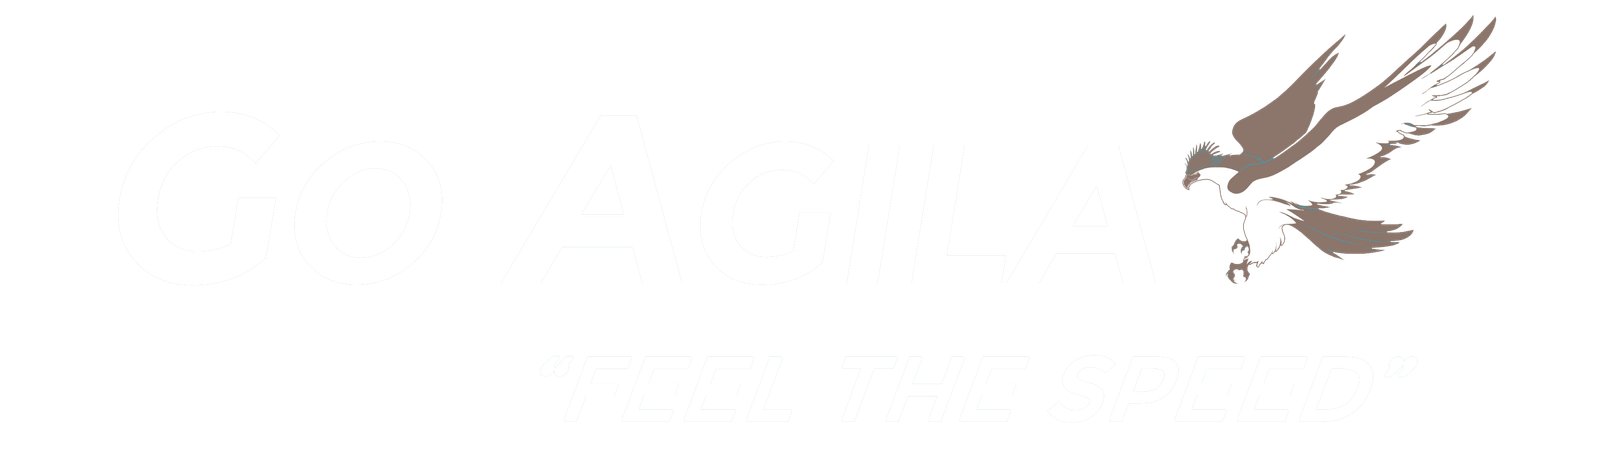 Go Agila